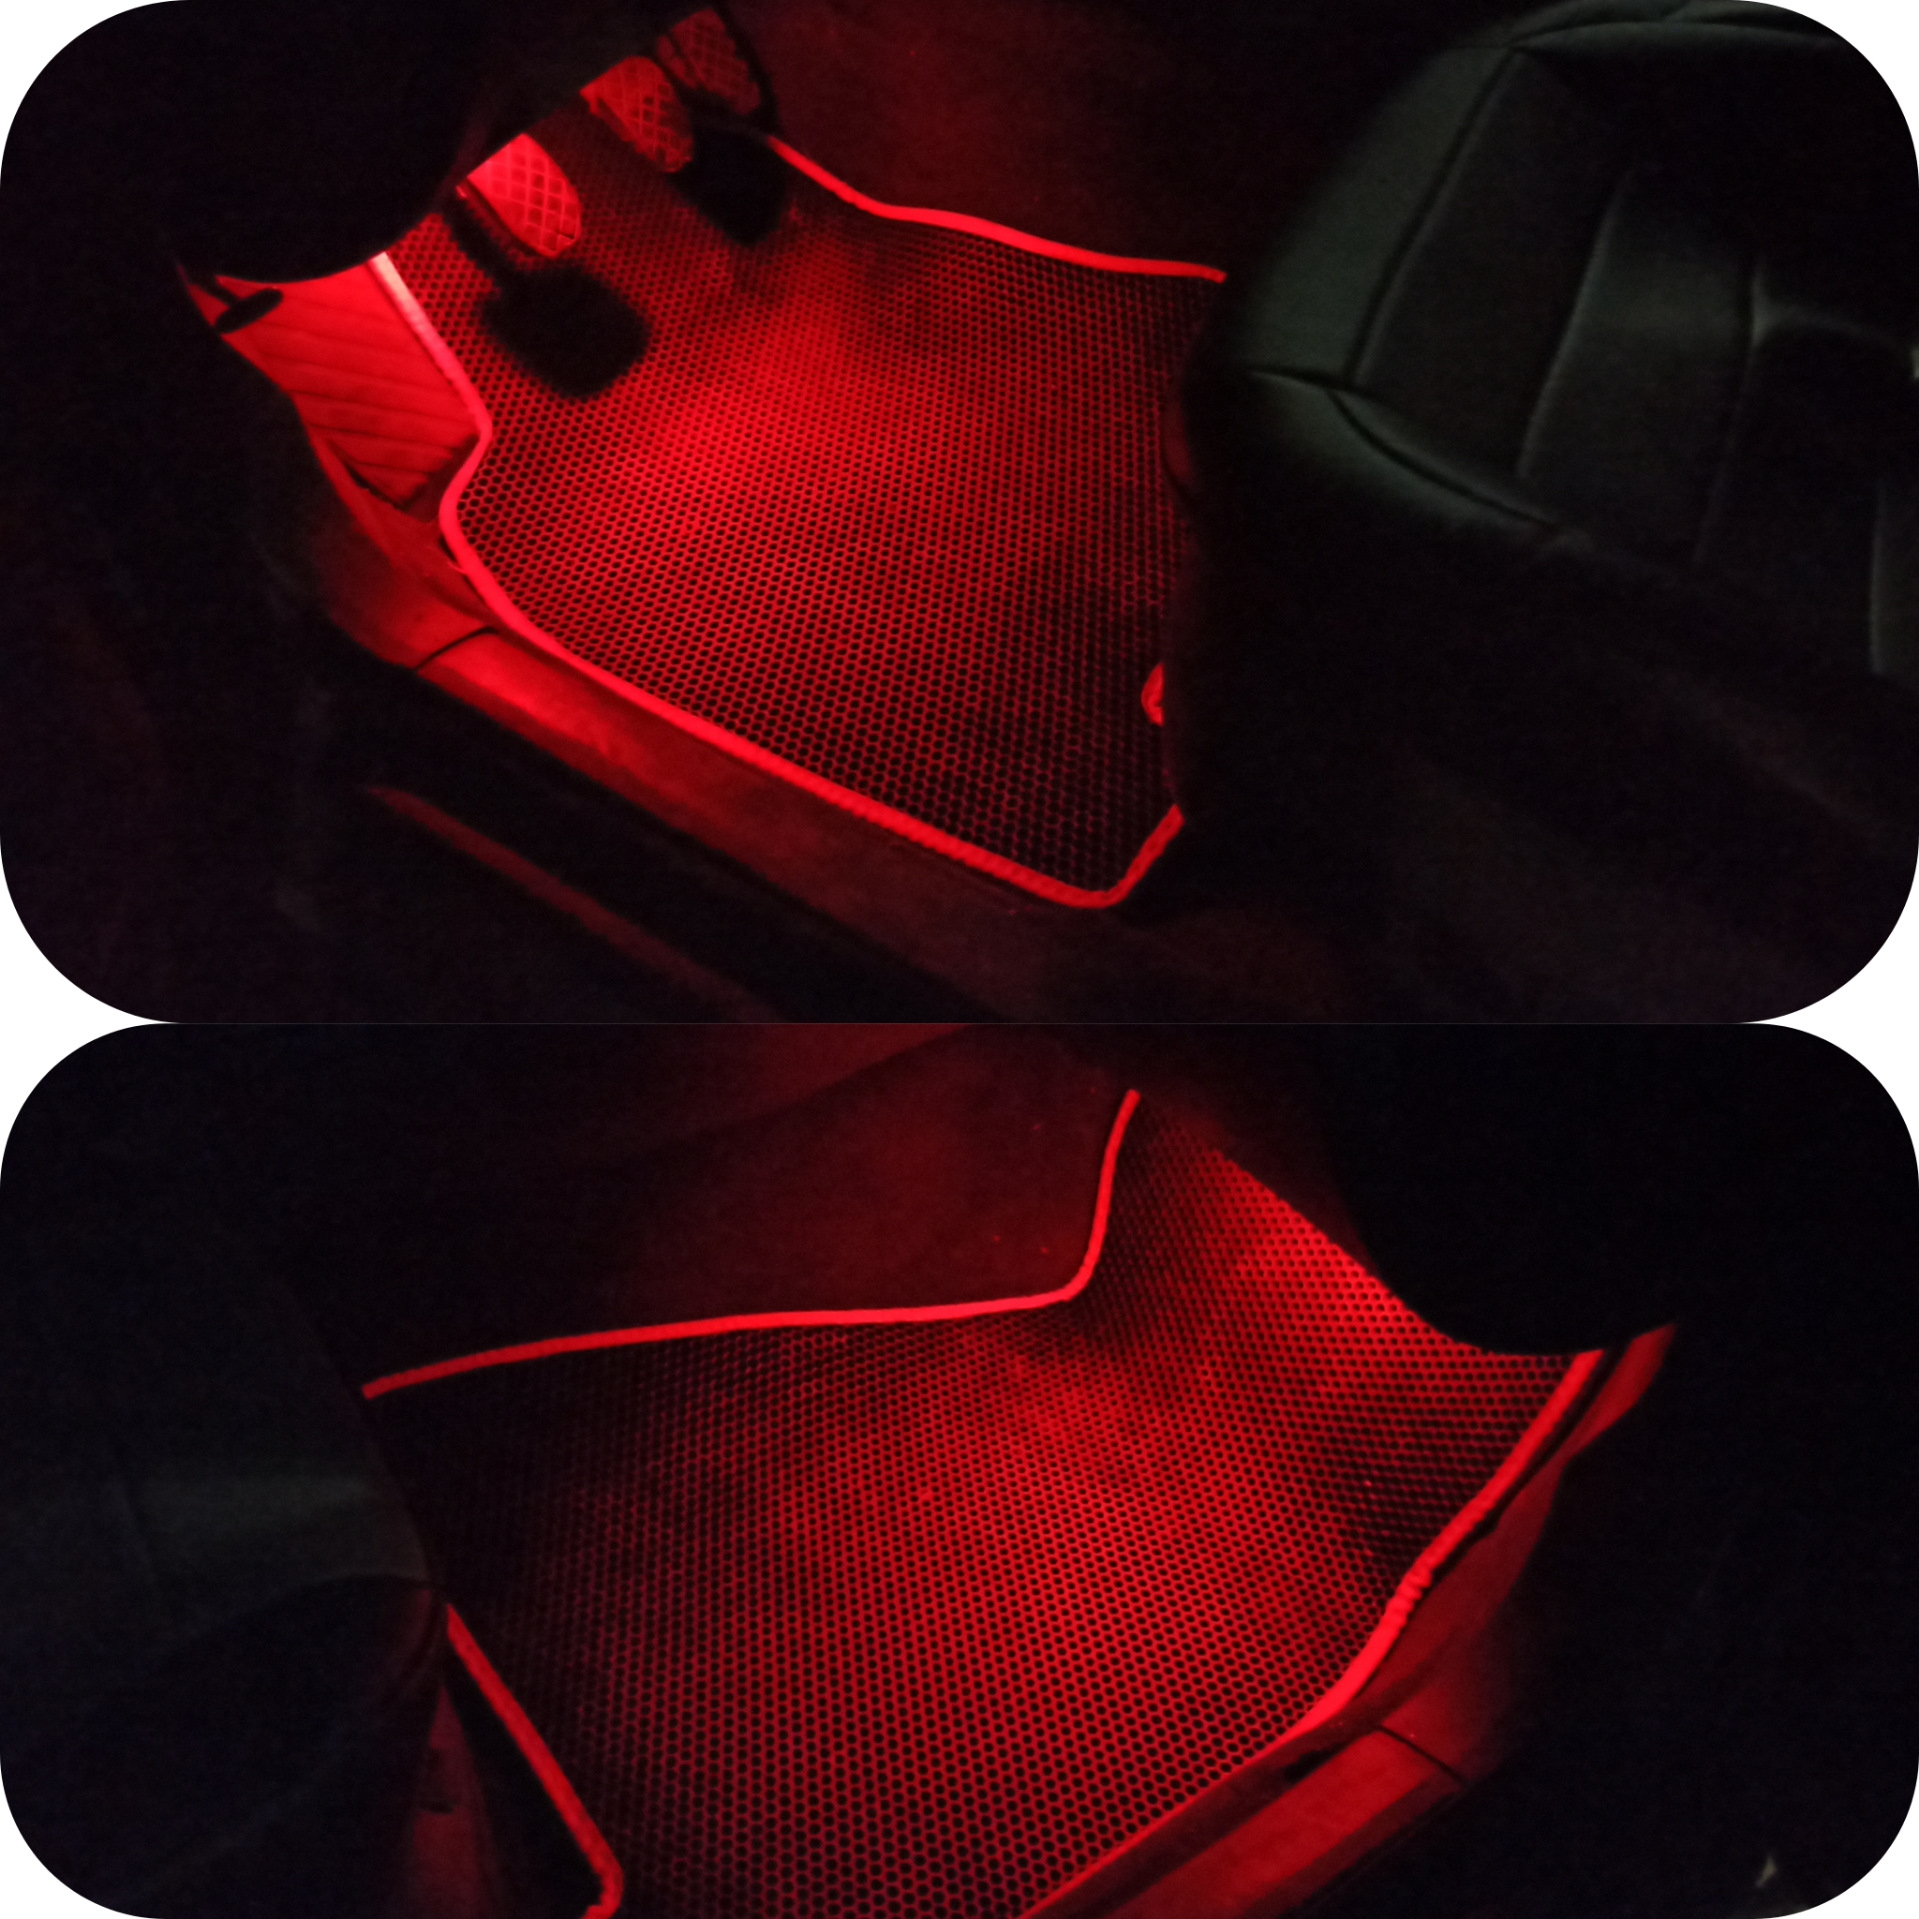 Купить стопы ауди. Красная подсветка в ноги. Ауди 80 красная. Подсветка в ноги на ASX В Красном цвете. Автомобильные прозрачные стопы красным кругляшком.